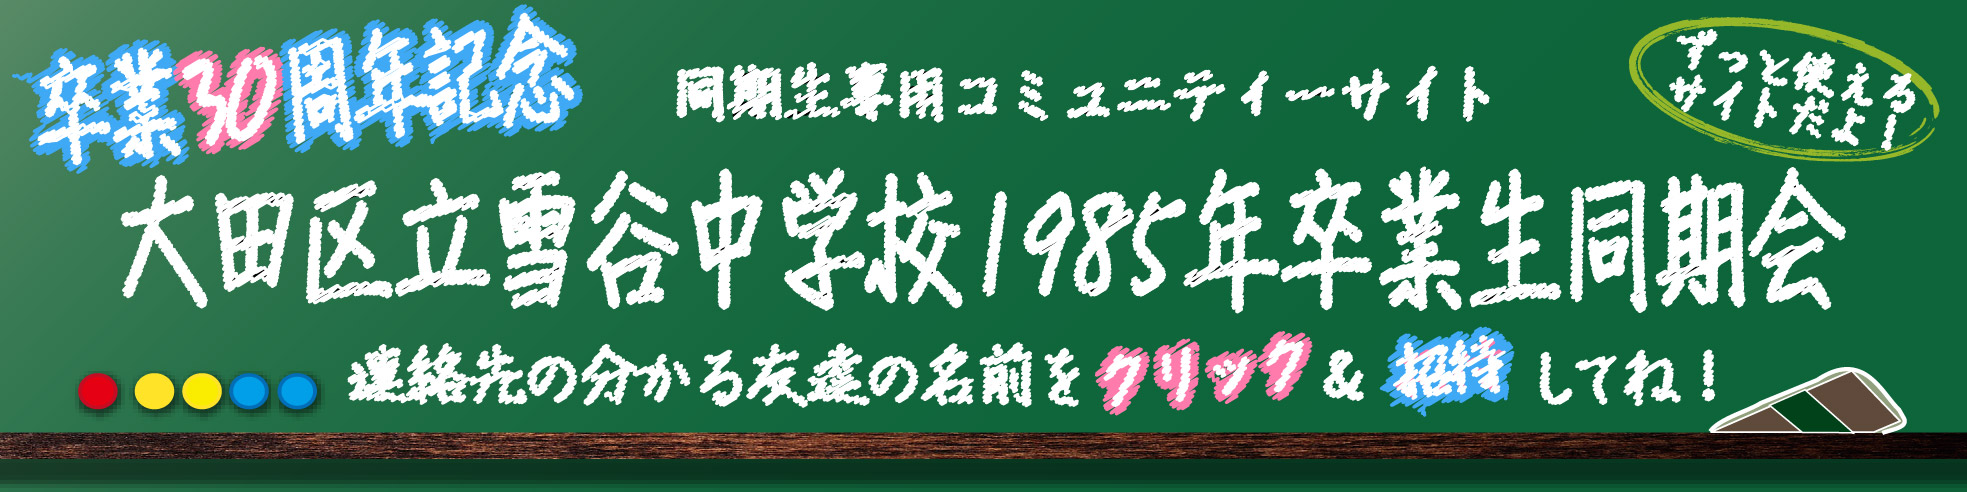 大田区立雪谷中学校1985年卒業生同期会